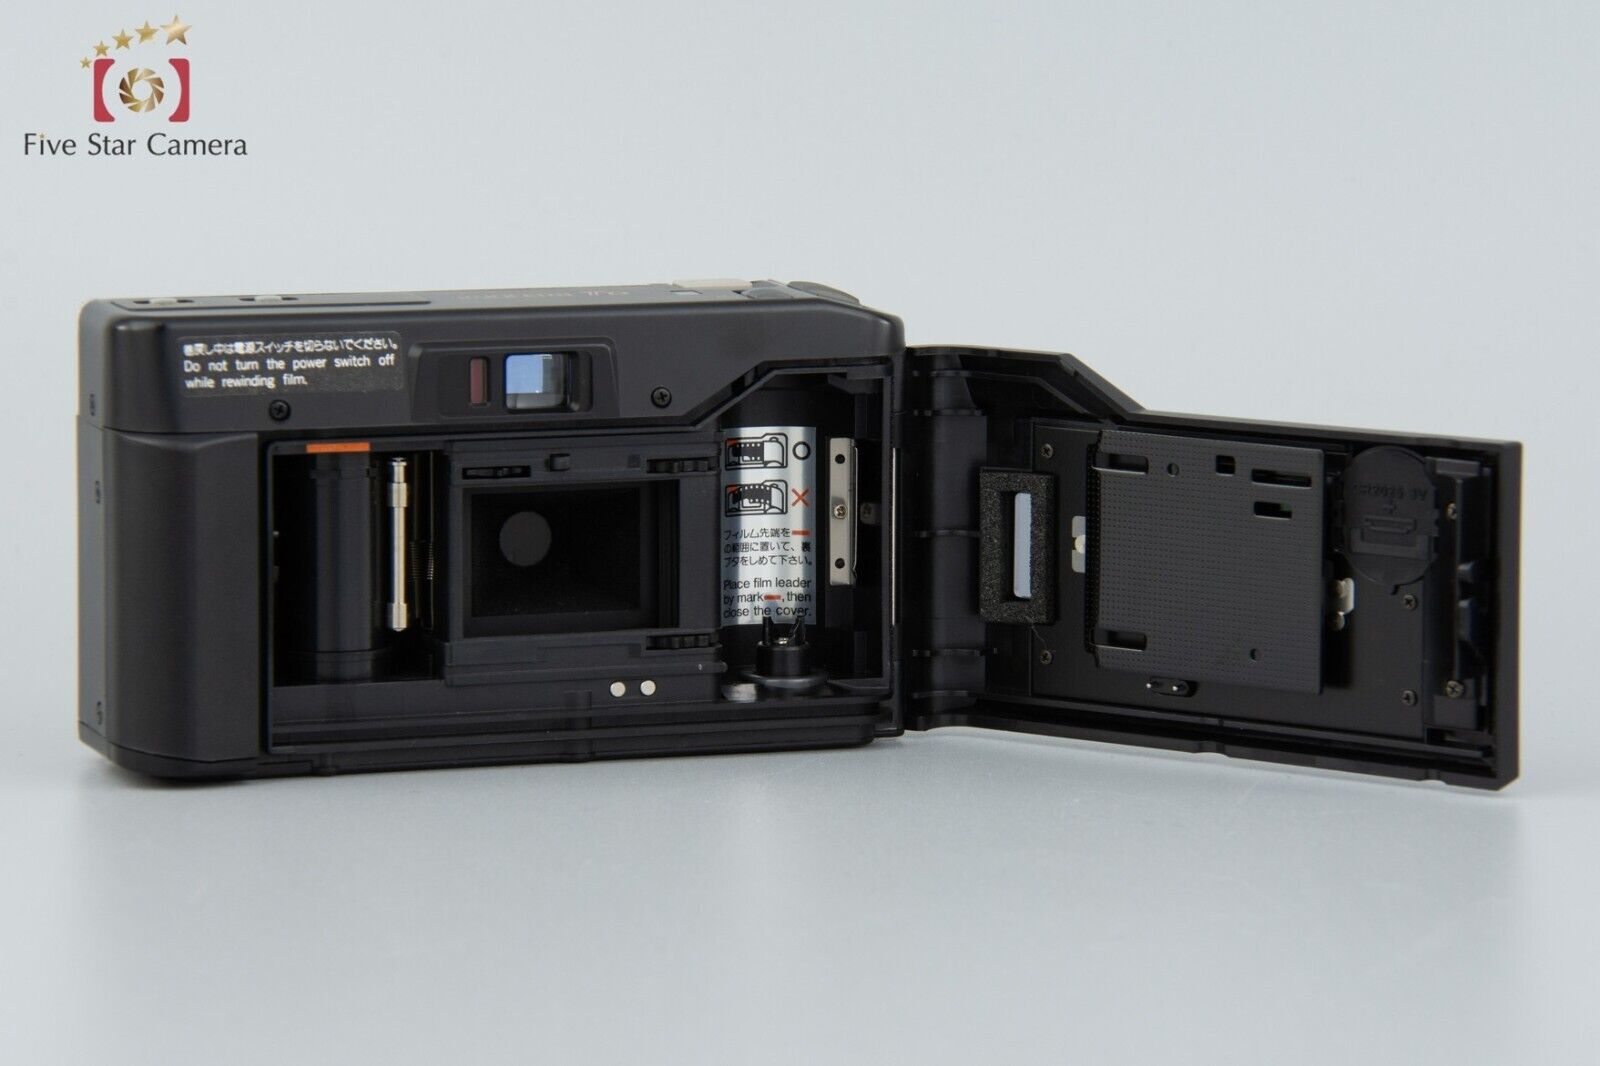 Kyocera TD Carl Zeiss Tessar 35/3.5 T* 35mm Point & Shoot Film Camera w/ Box